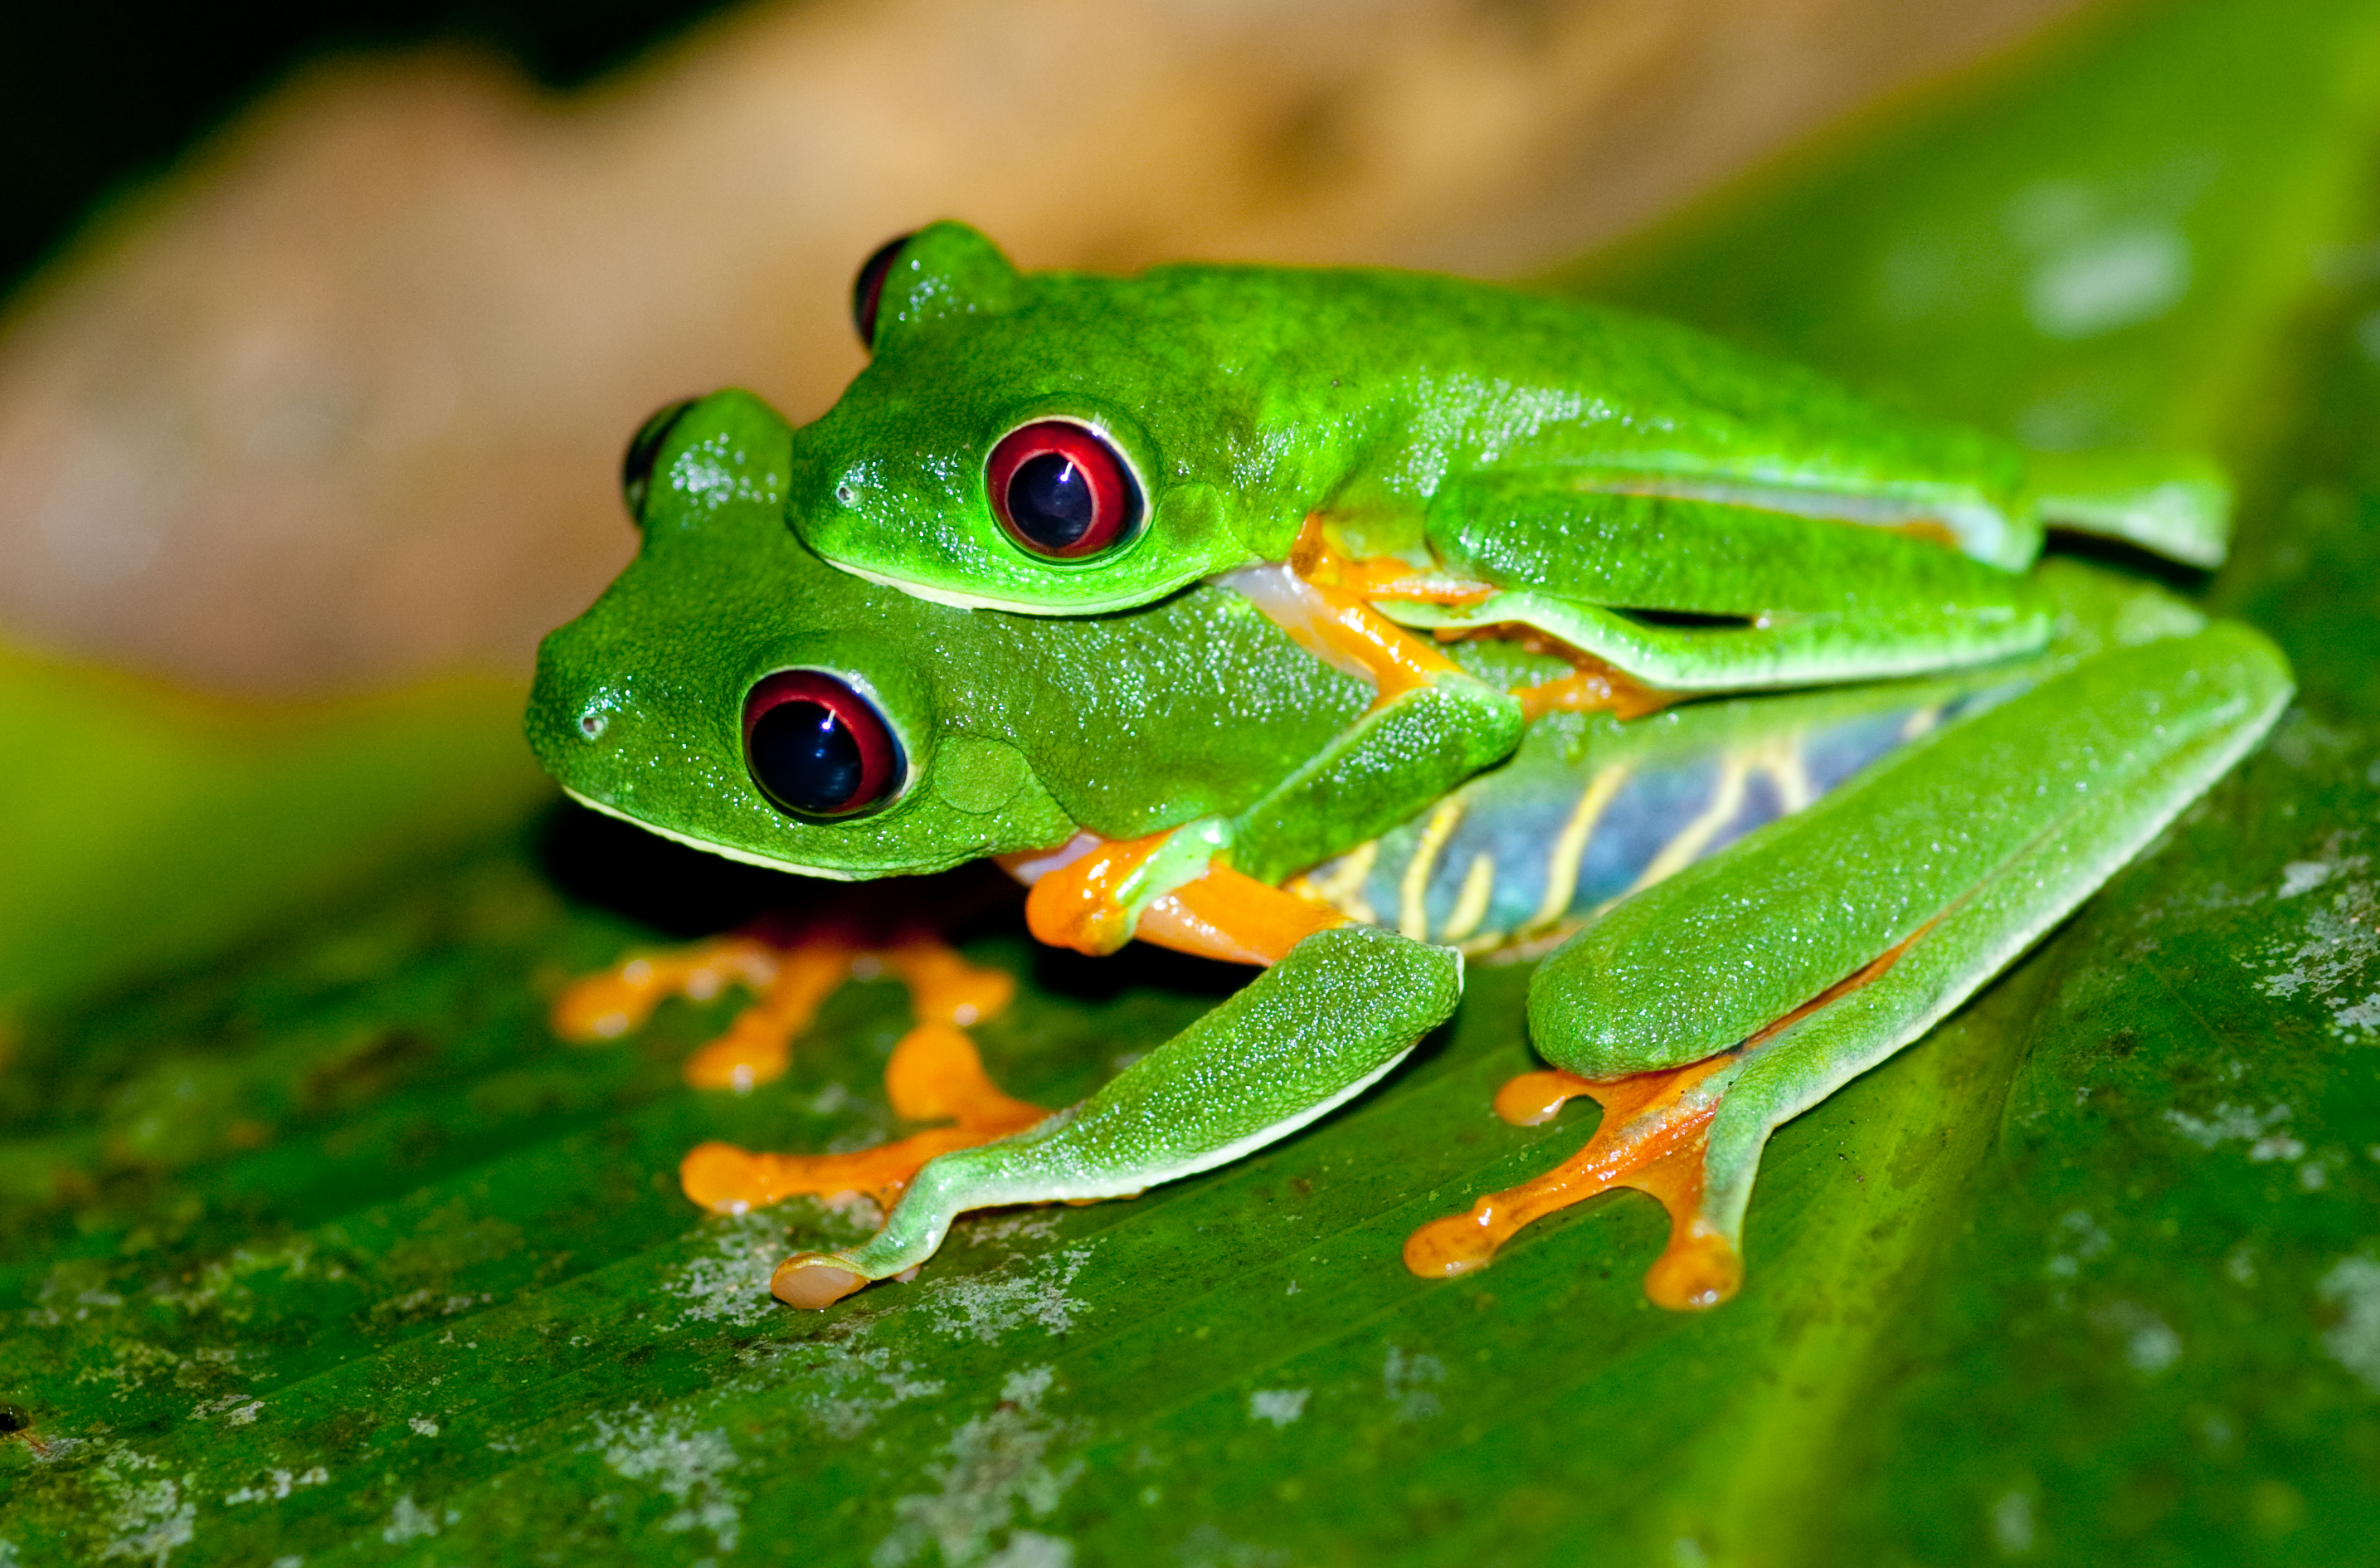 Resultado de imagem para red eyed tree frog female and male